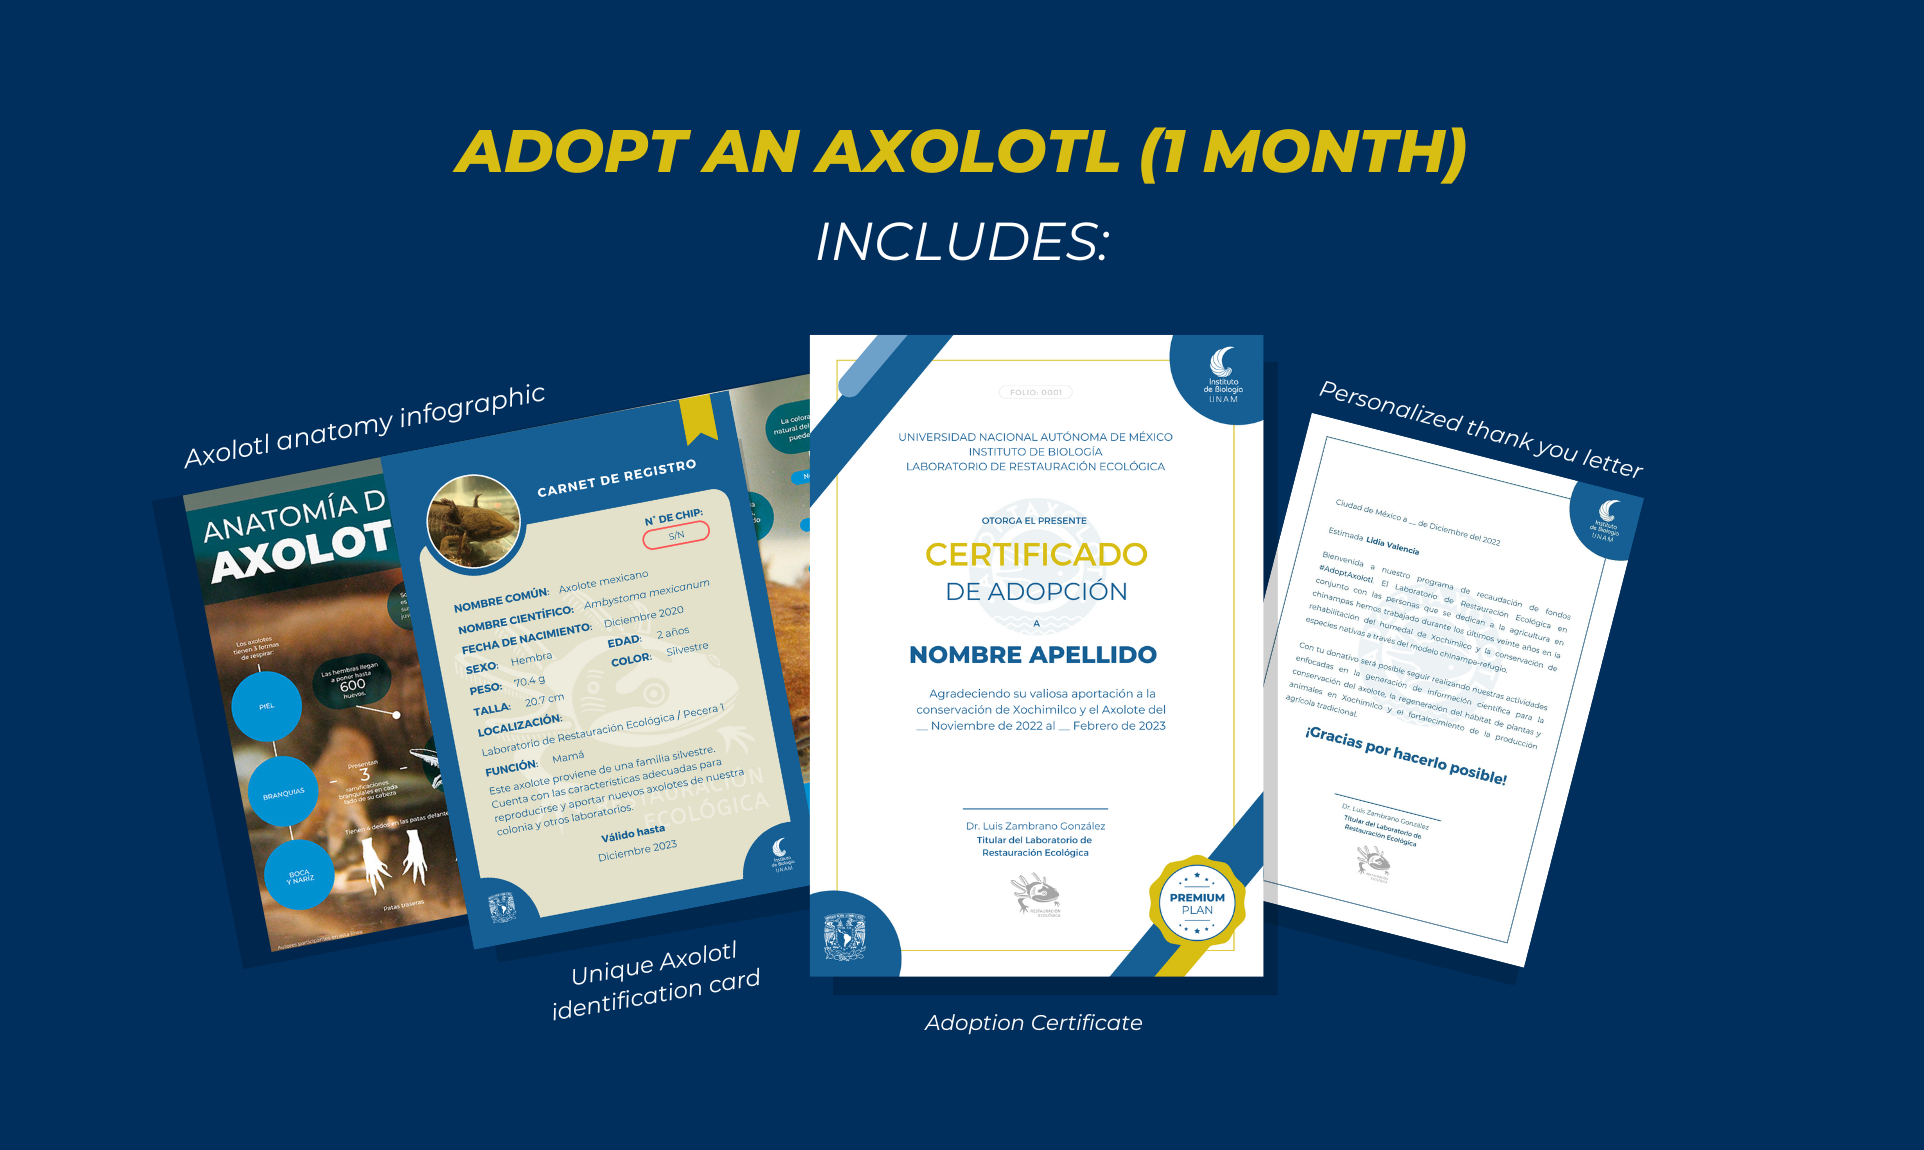 Adoptaxolotl - Axolotl adoption: 1 month